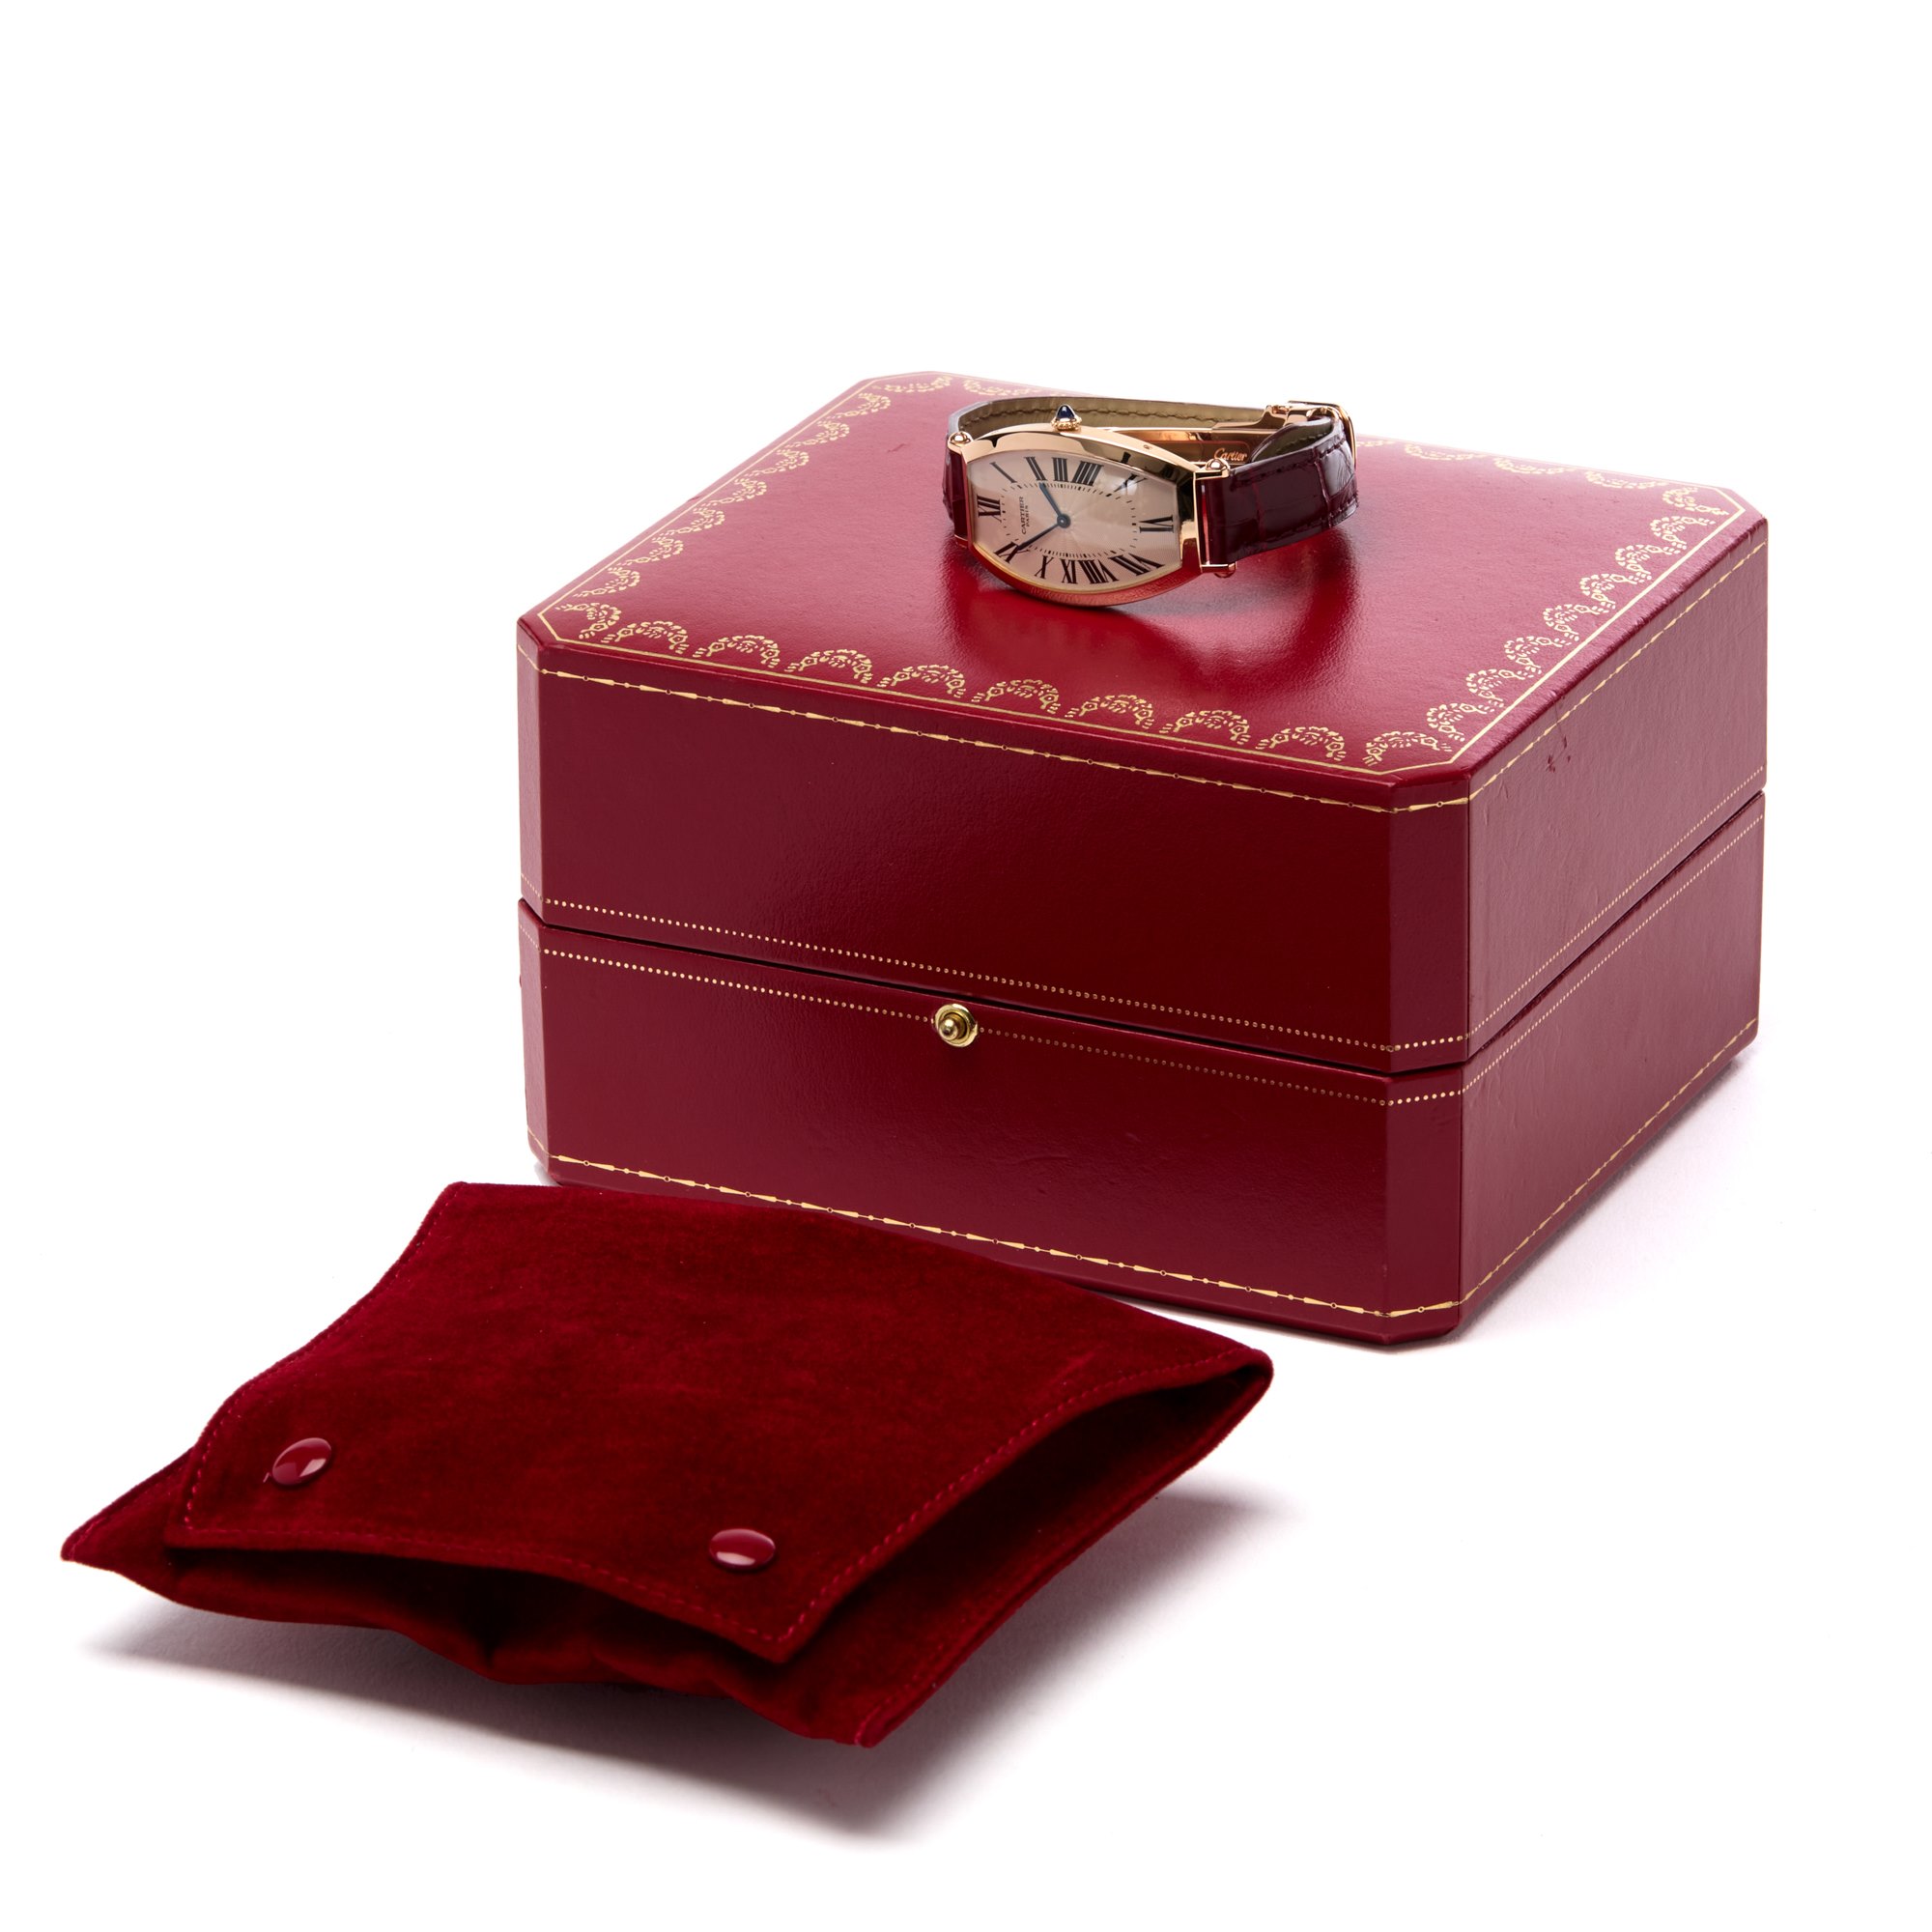 Cartier Tonneau 18K Rose Gold W1530551